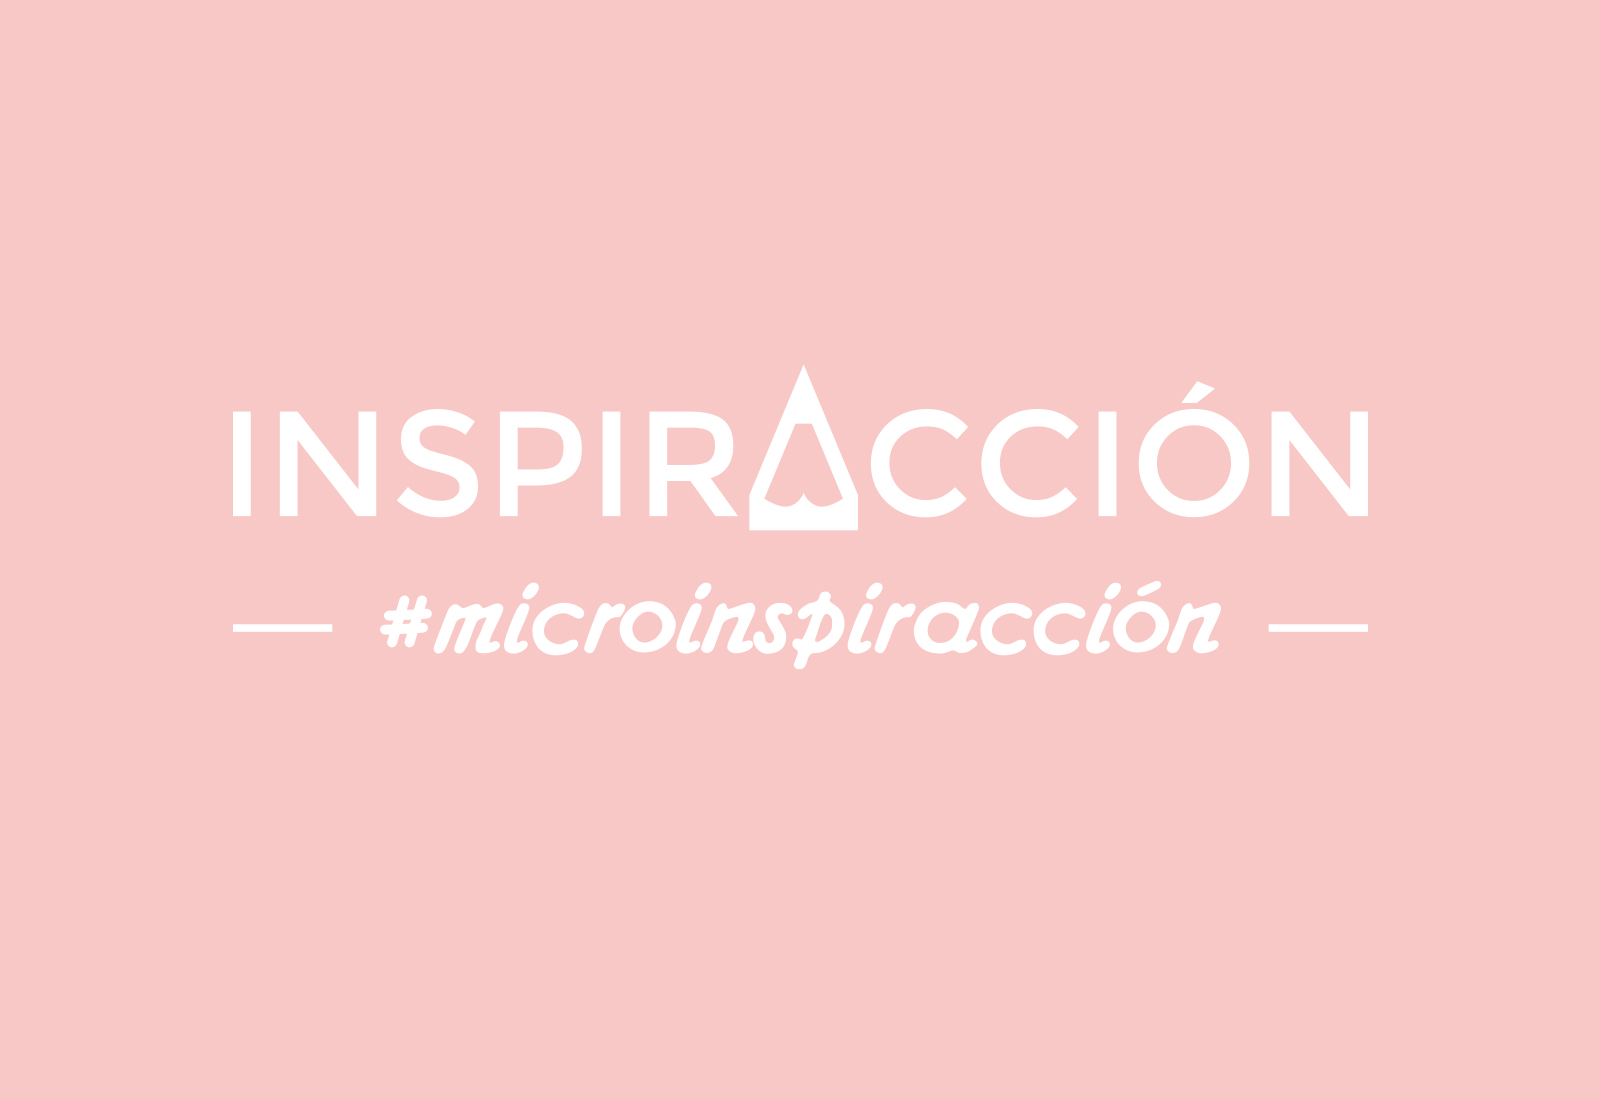 microinspiraccion imagen - MicroinspirAcción